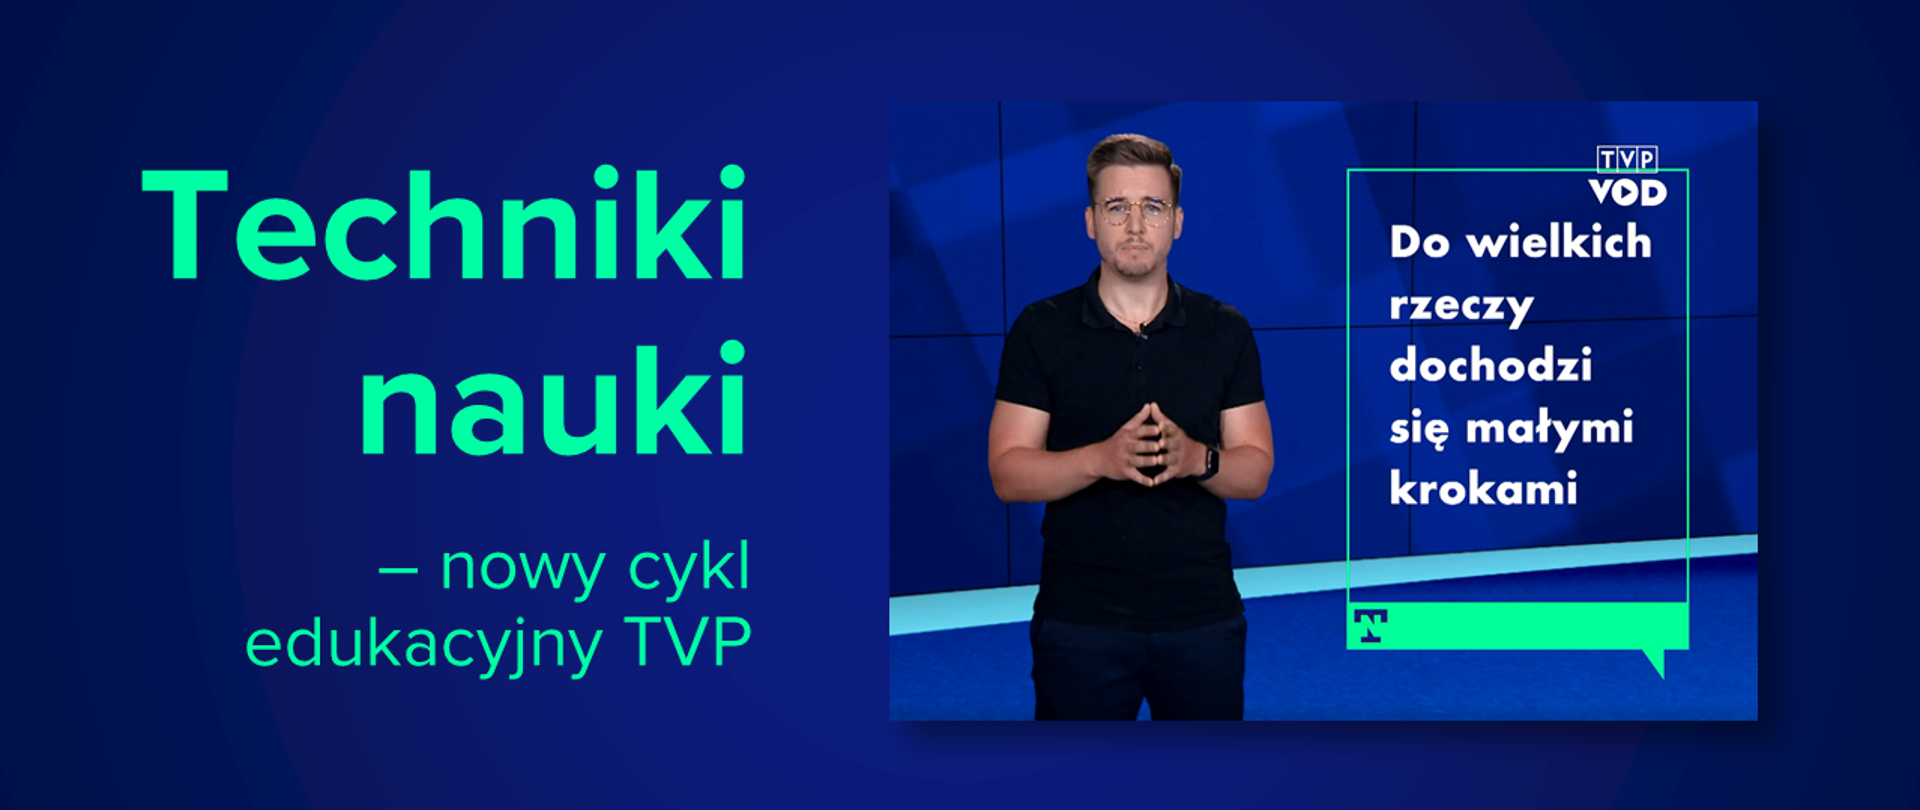 Techniki nauki – nowy cykl edukacyjny TVP VOD - Ministerstwo Edukacji  Narodowej - Portal Gov.pl